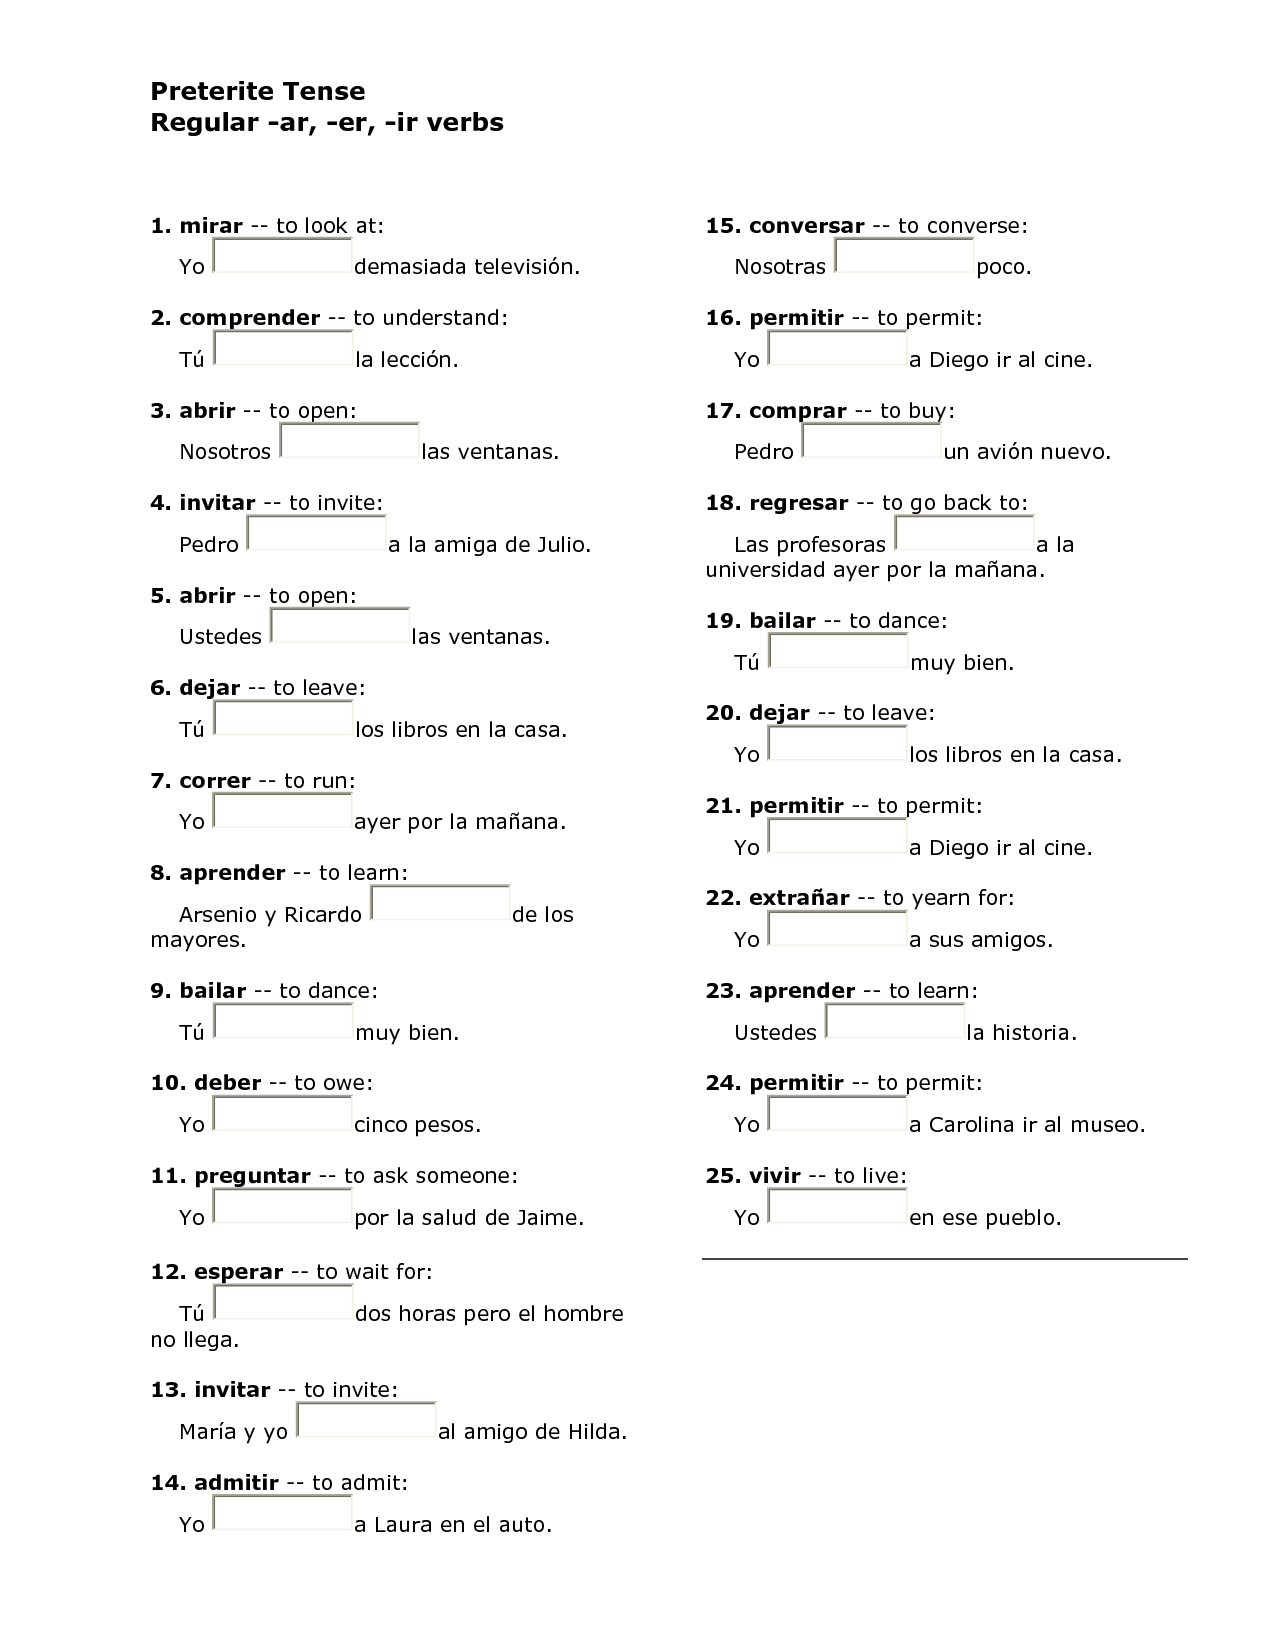 15-french-er-verb-conjugation-worksheet-worksheeto